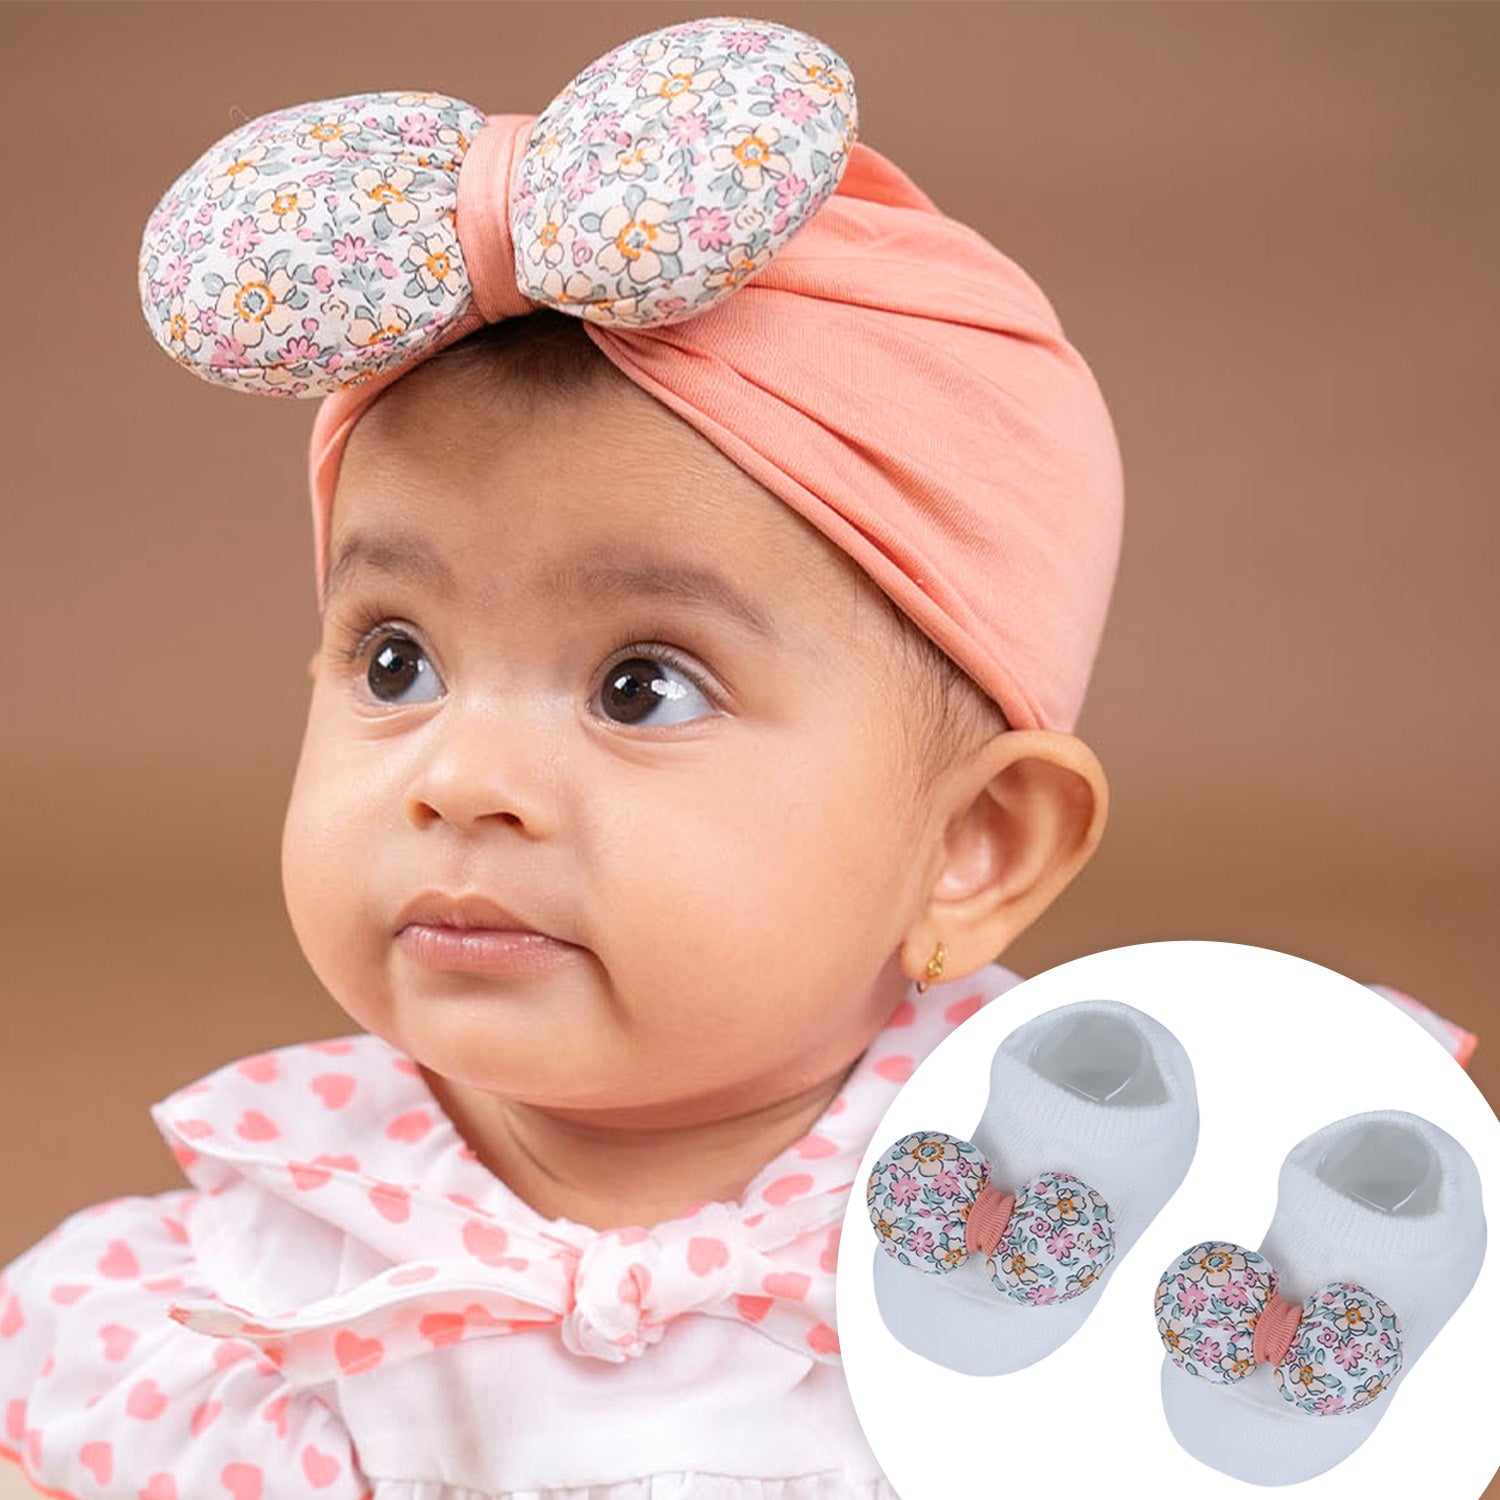 Baby Blossom 5-Pack Knit Infant Baby Socks White